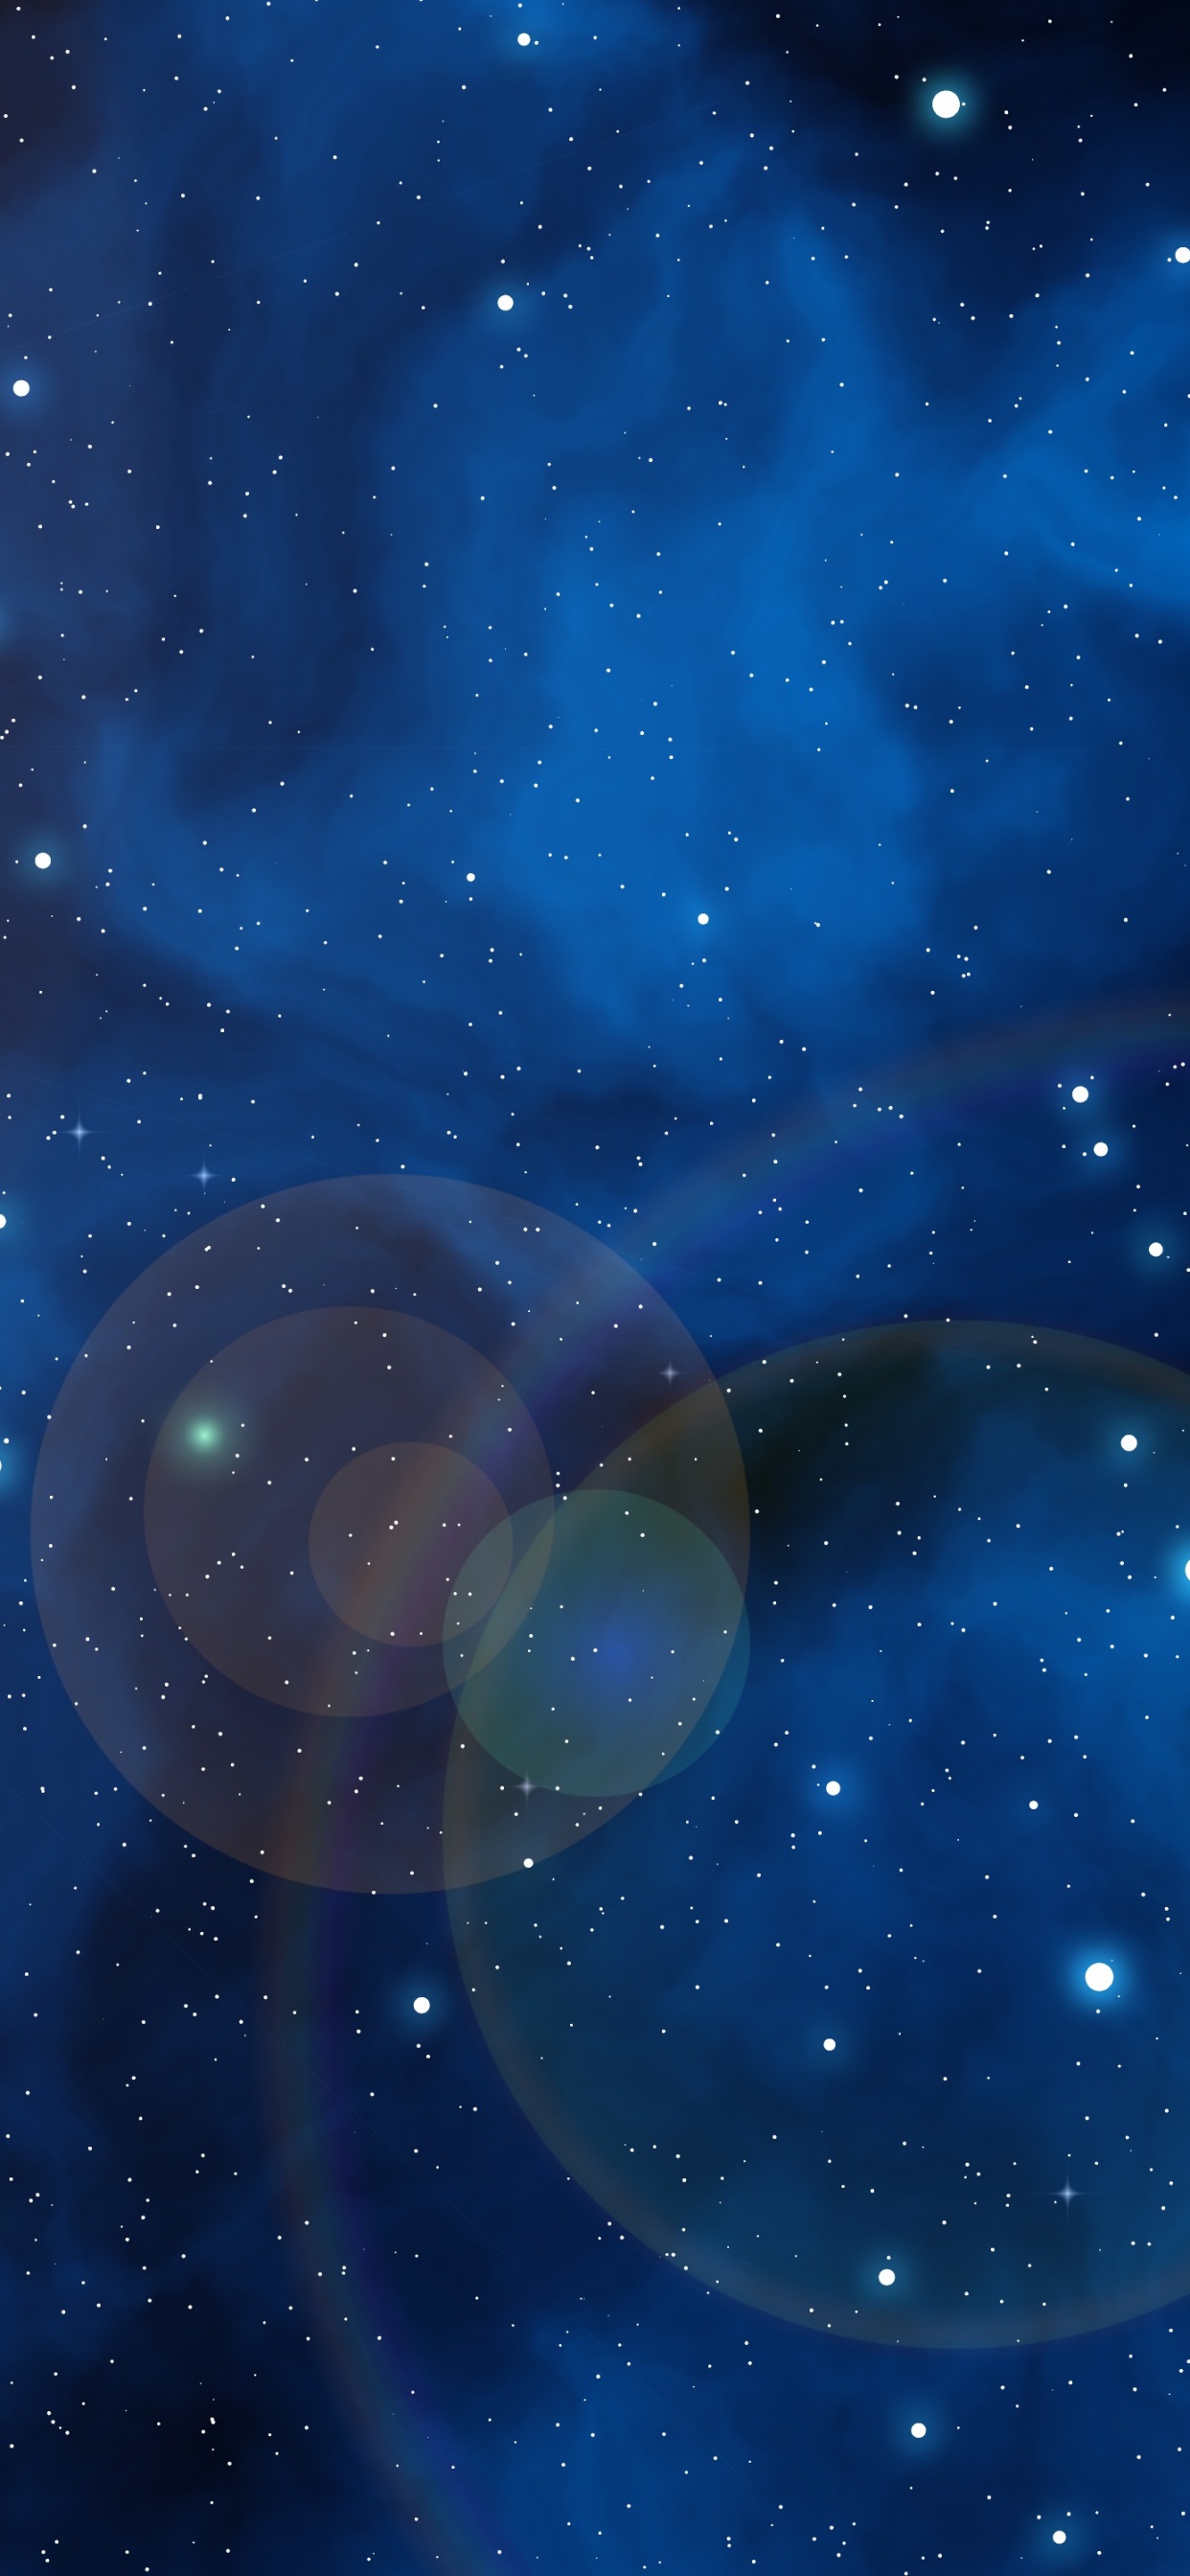 Blaue Und Weiße Galaxieillustration. Wallpaper in 1242x2688 Resolution